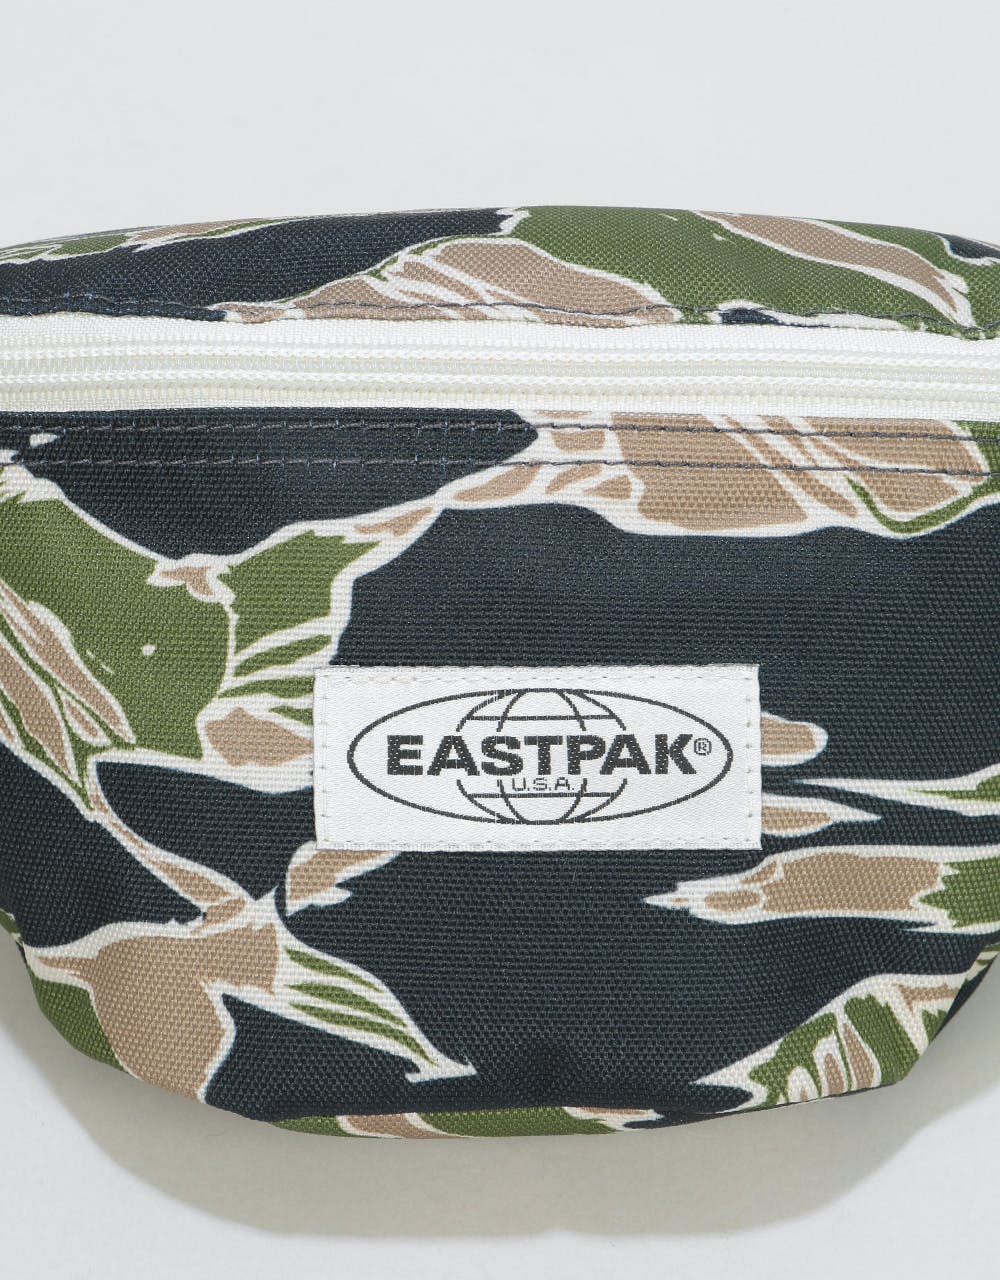 Eastpak Springer Cross Body Bag - Camo'Ed Forest